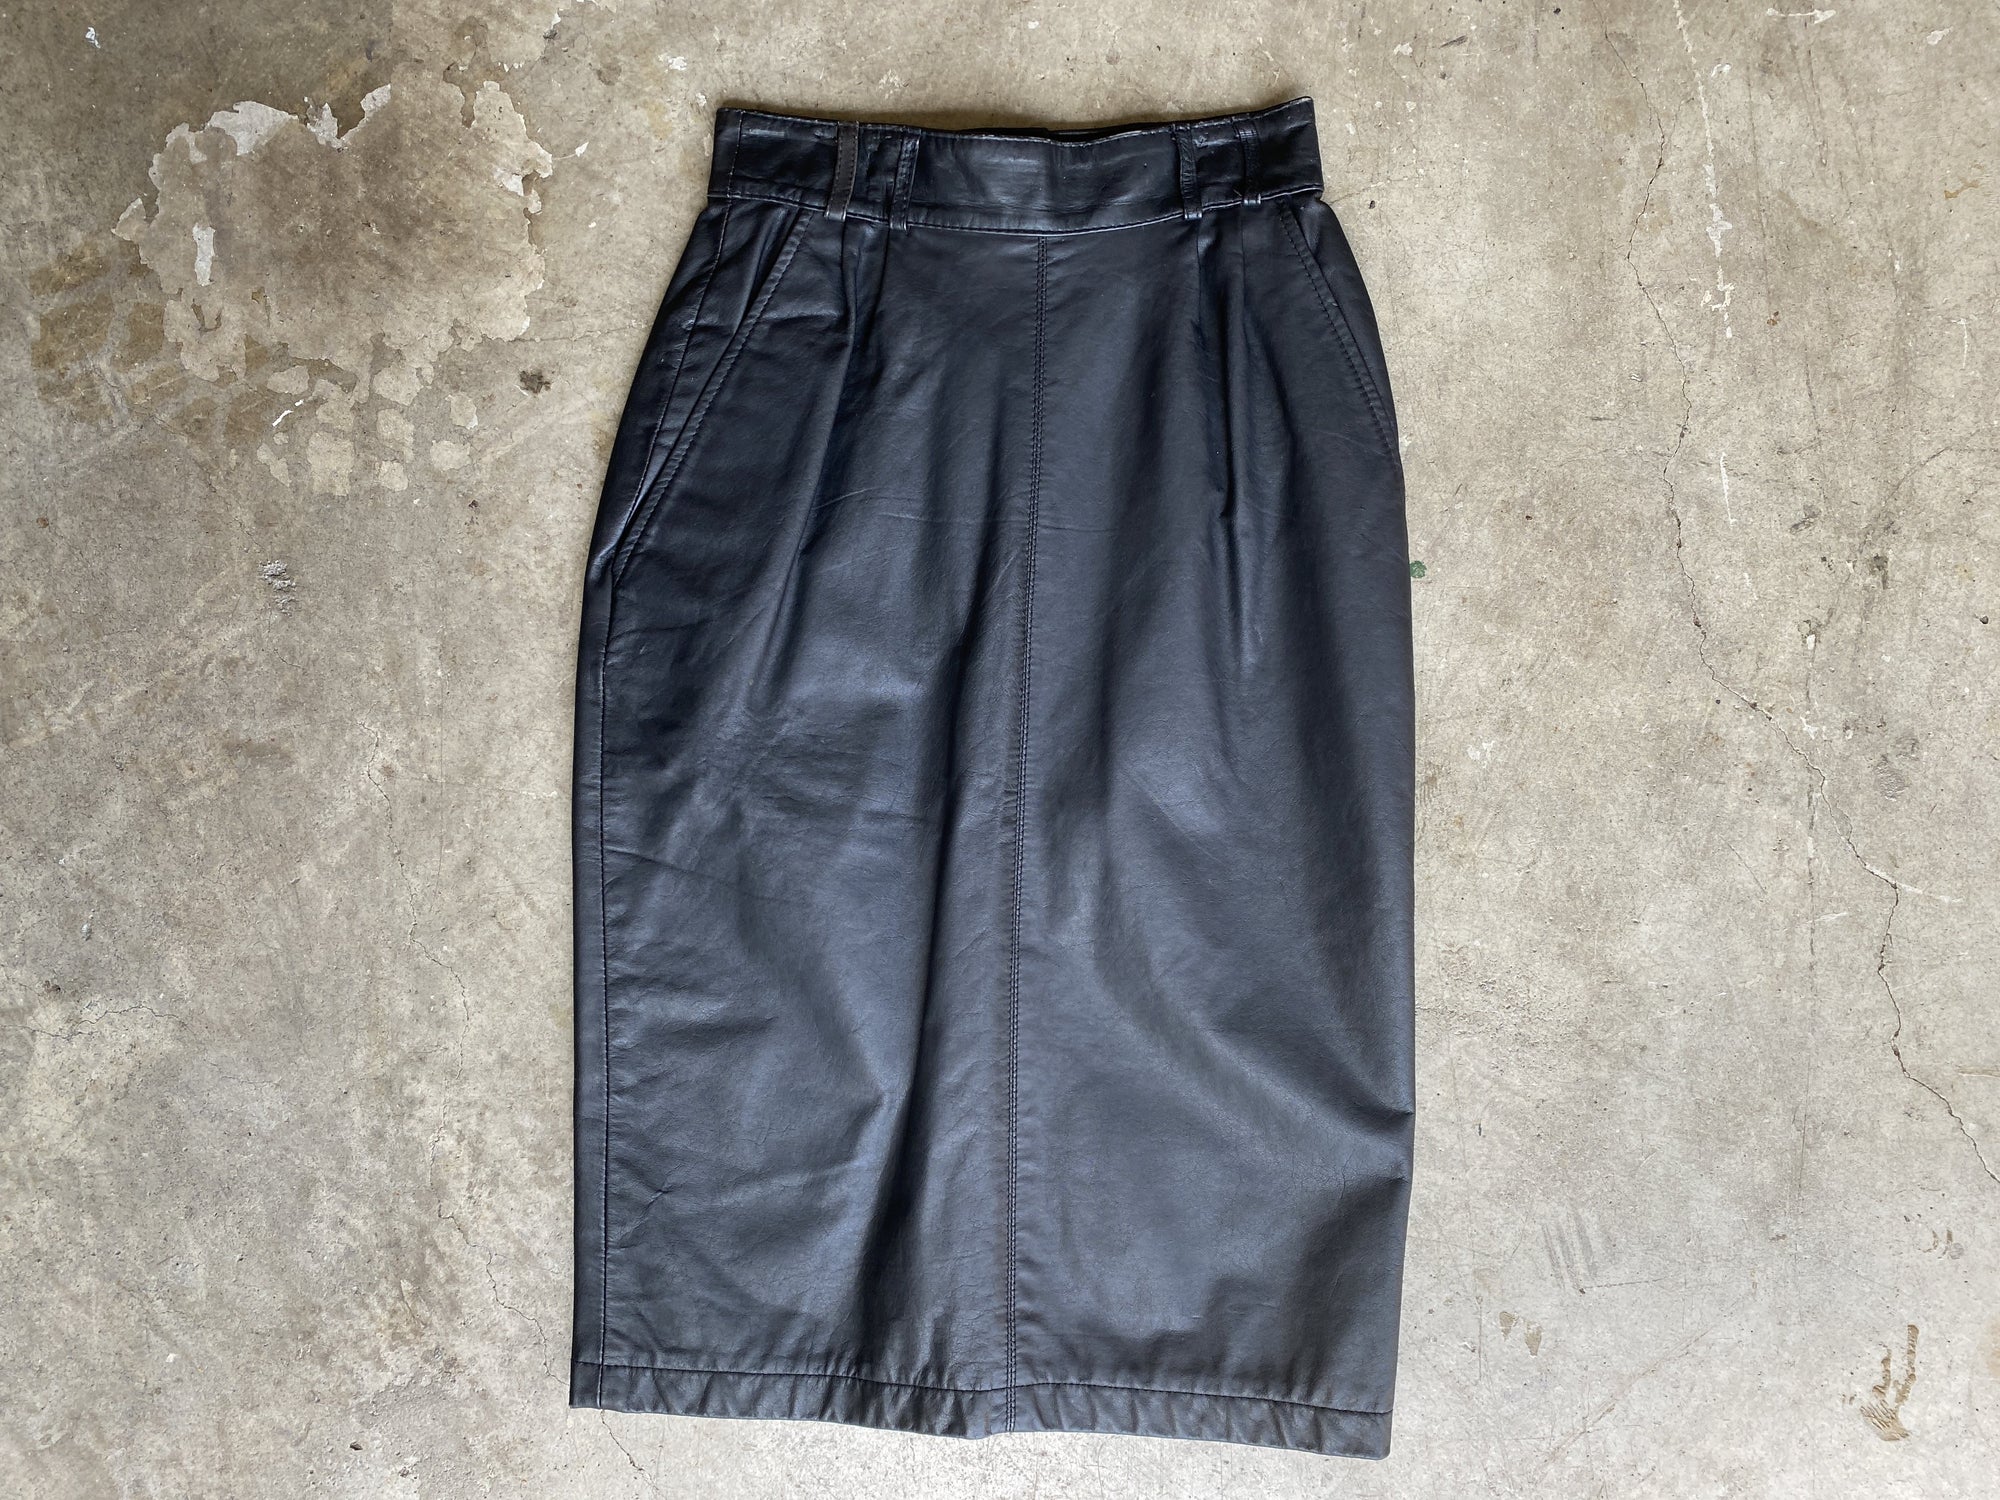 Black Leather Pleated Pencil Skirt